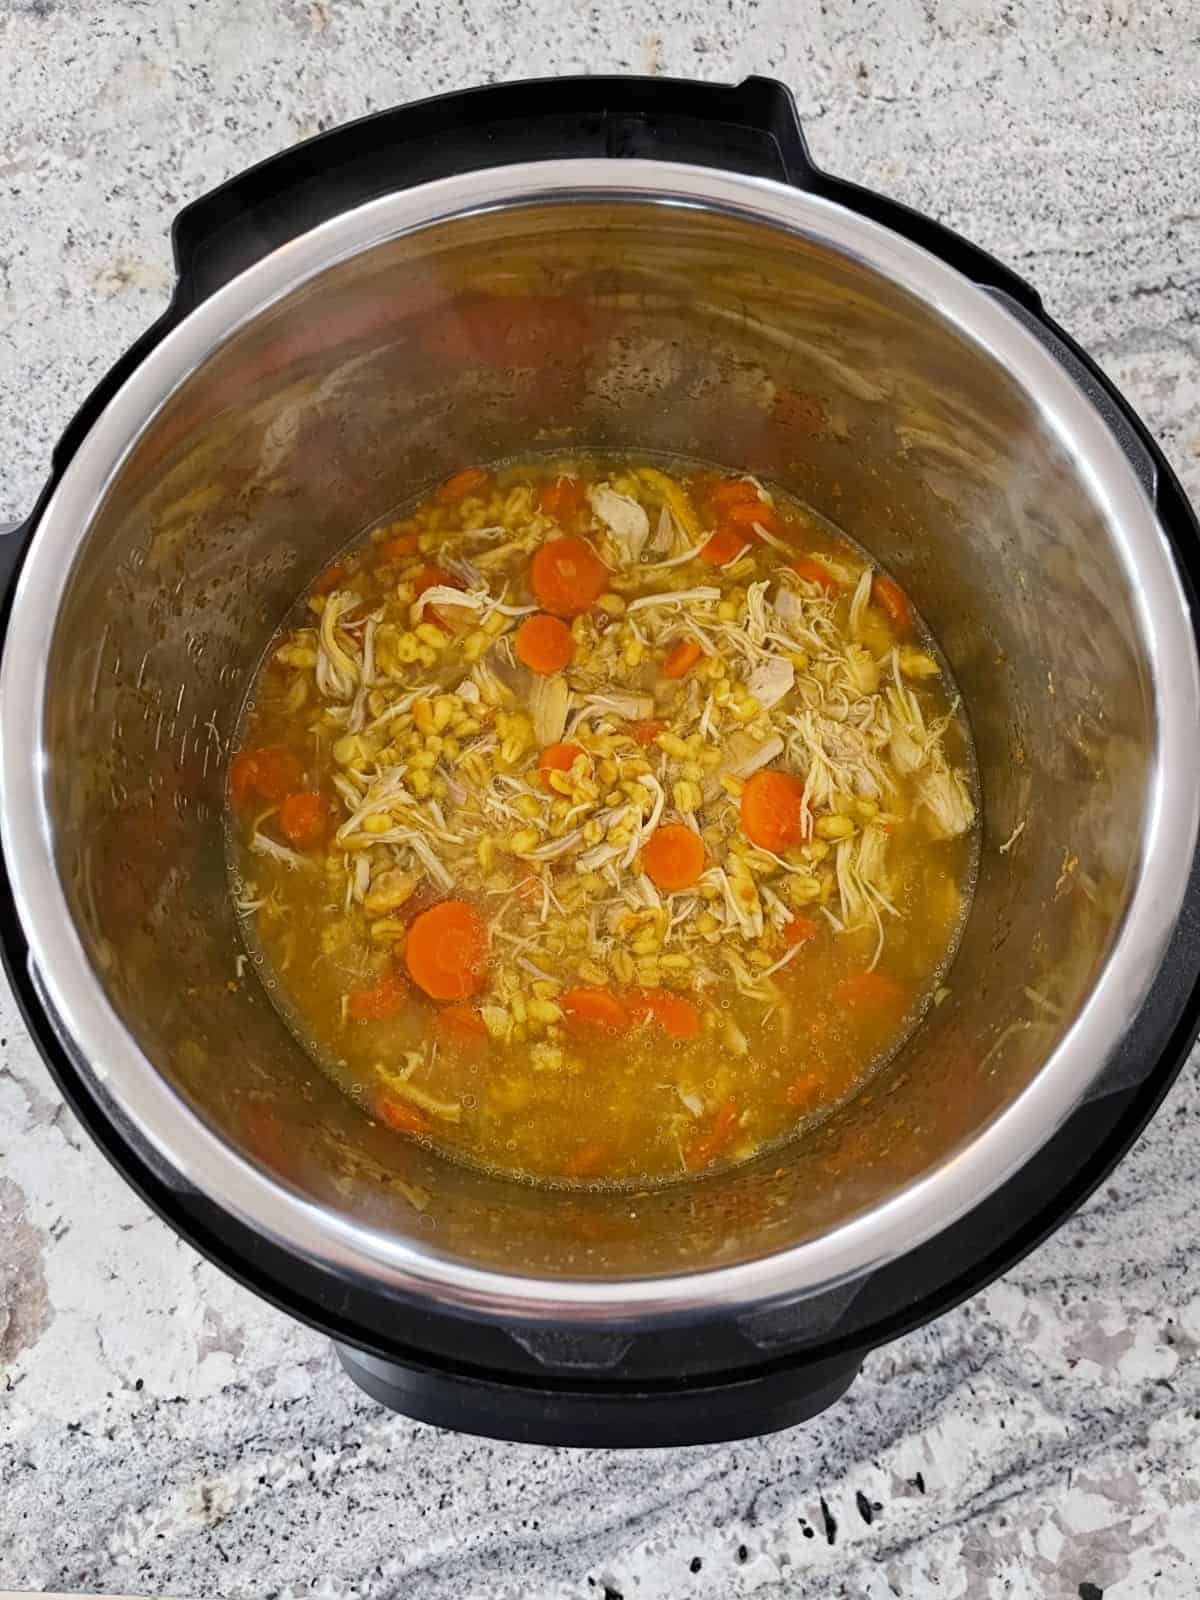 Fresh cooked barley chicken stew in InstantPot.